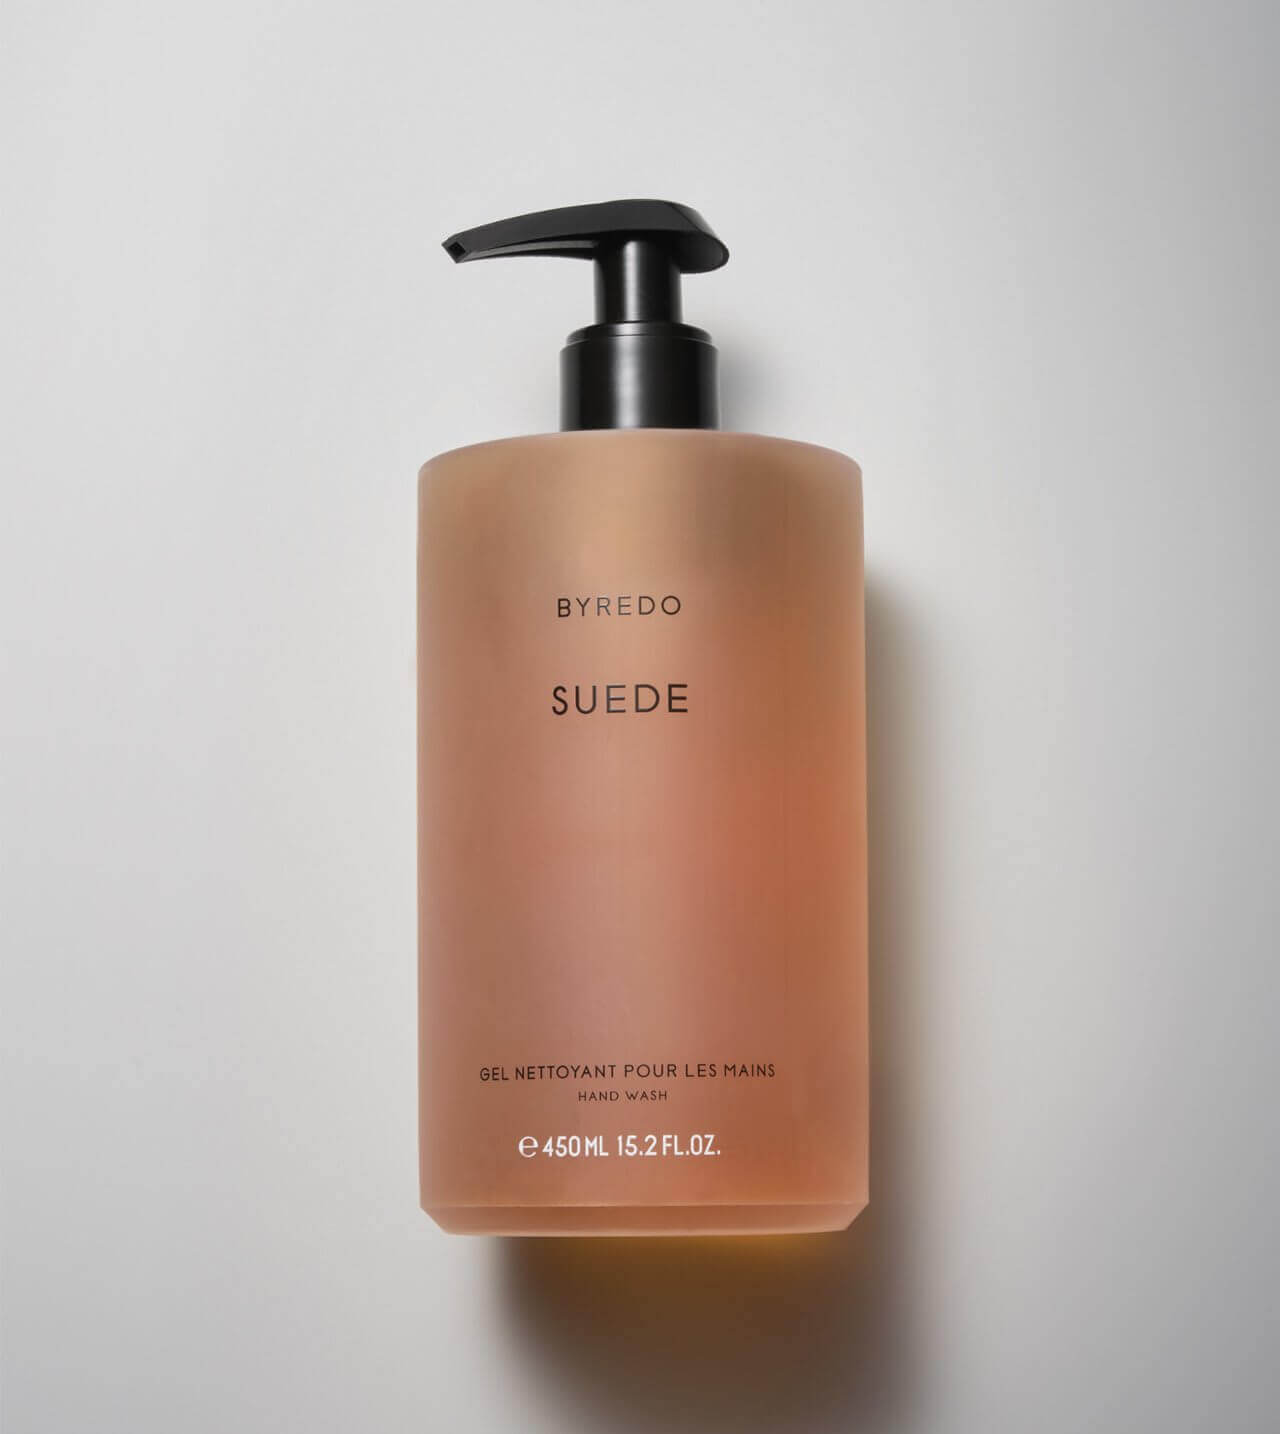 Byredo - Suede - Hand wash.